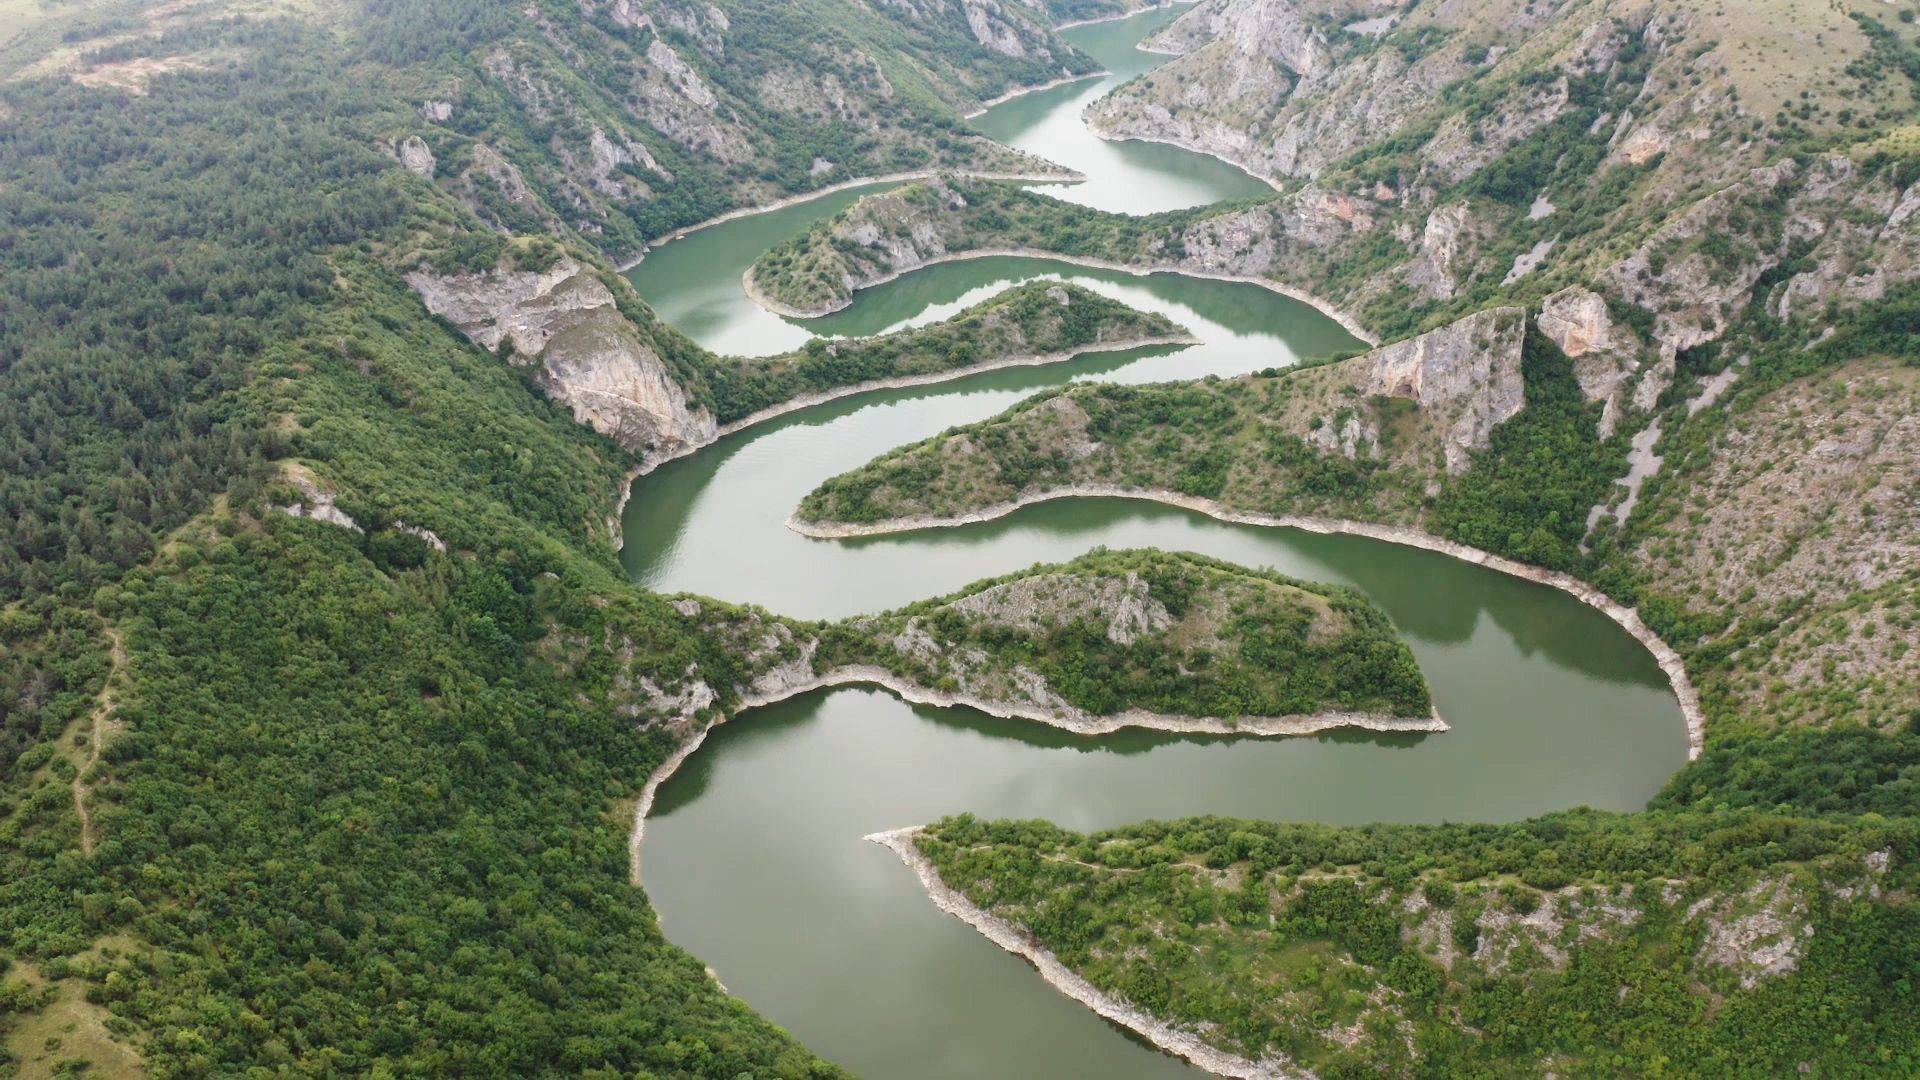 黑龙江有南北两源,以南源额尔古纳河为河源,全长4440公里